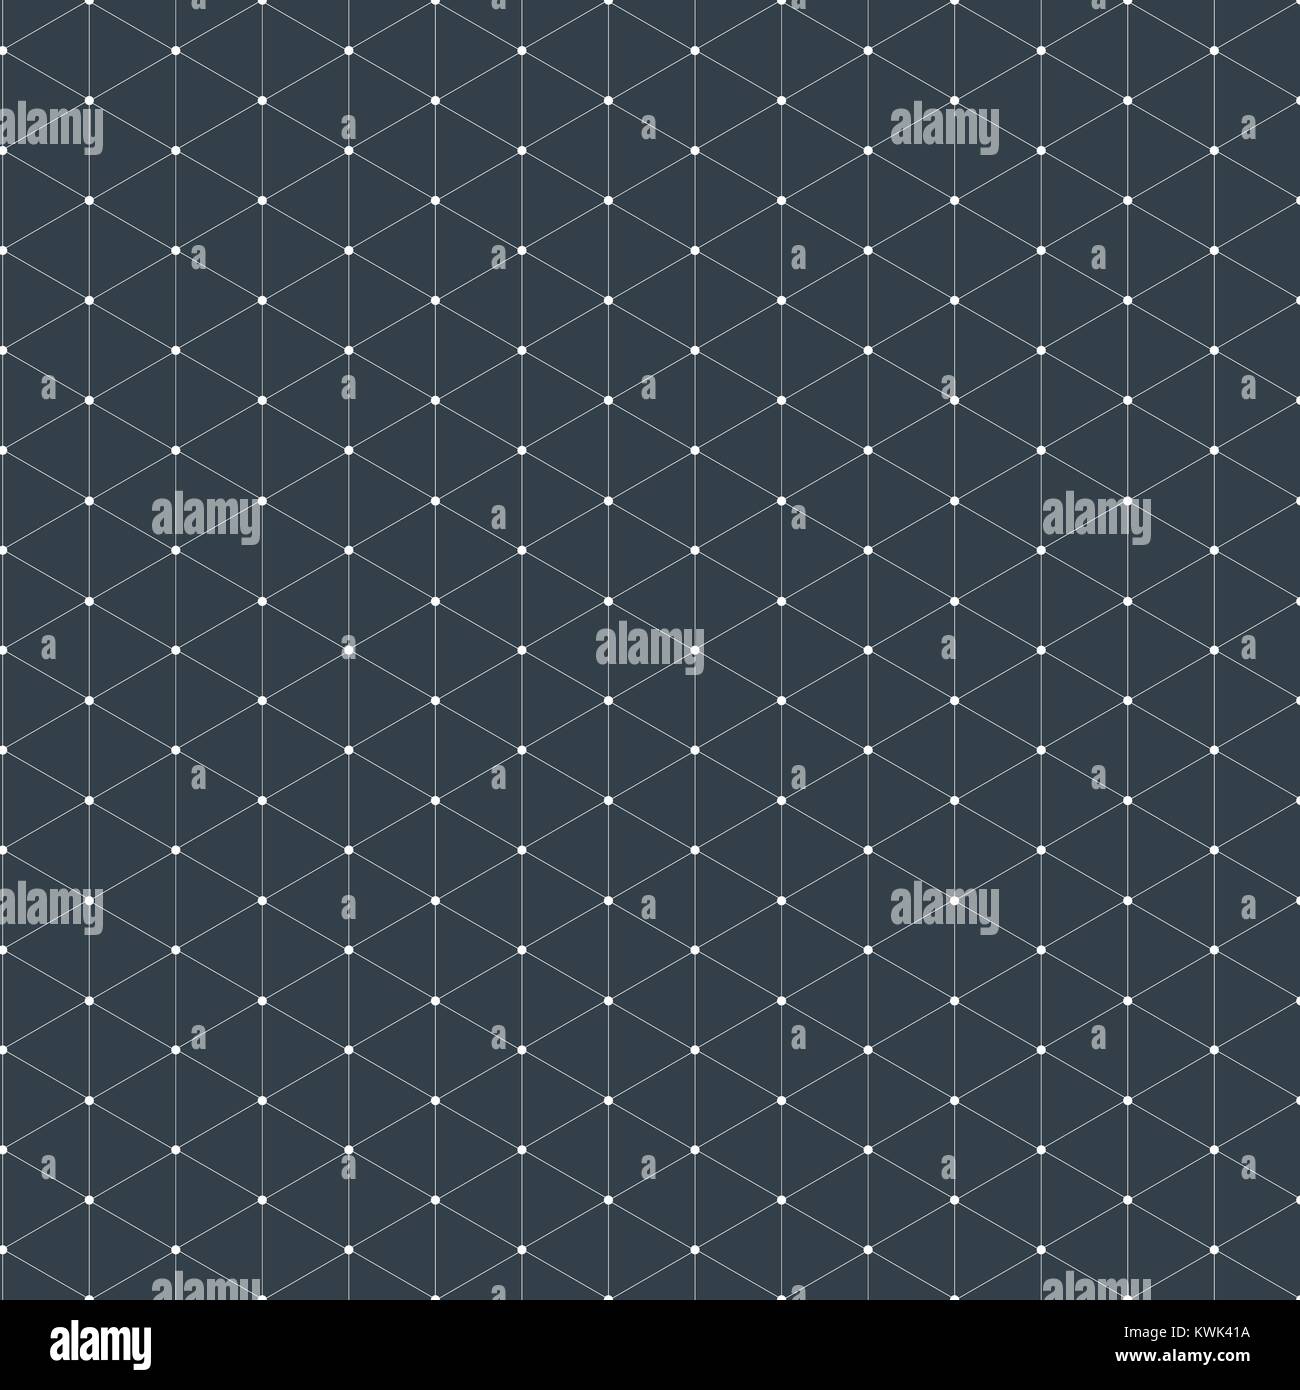 Modernes, stilvolles isometrische Muster Textur, drei-dimensionalen Rechteck, sich wiederholenden geometrischen Hintergrund mit rhombus Kreisen unterschiedlich, Vektor Lllustrat Stock Vektor